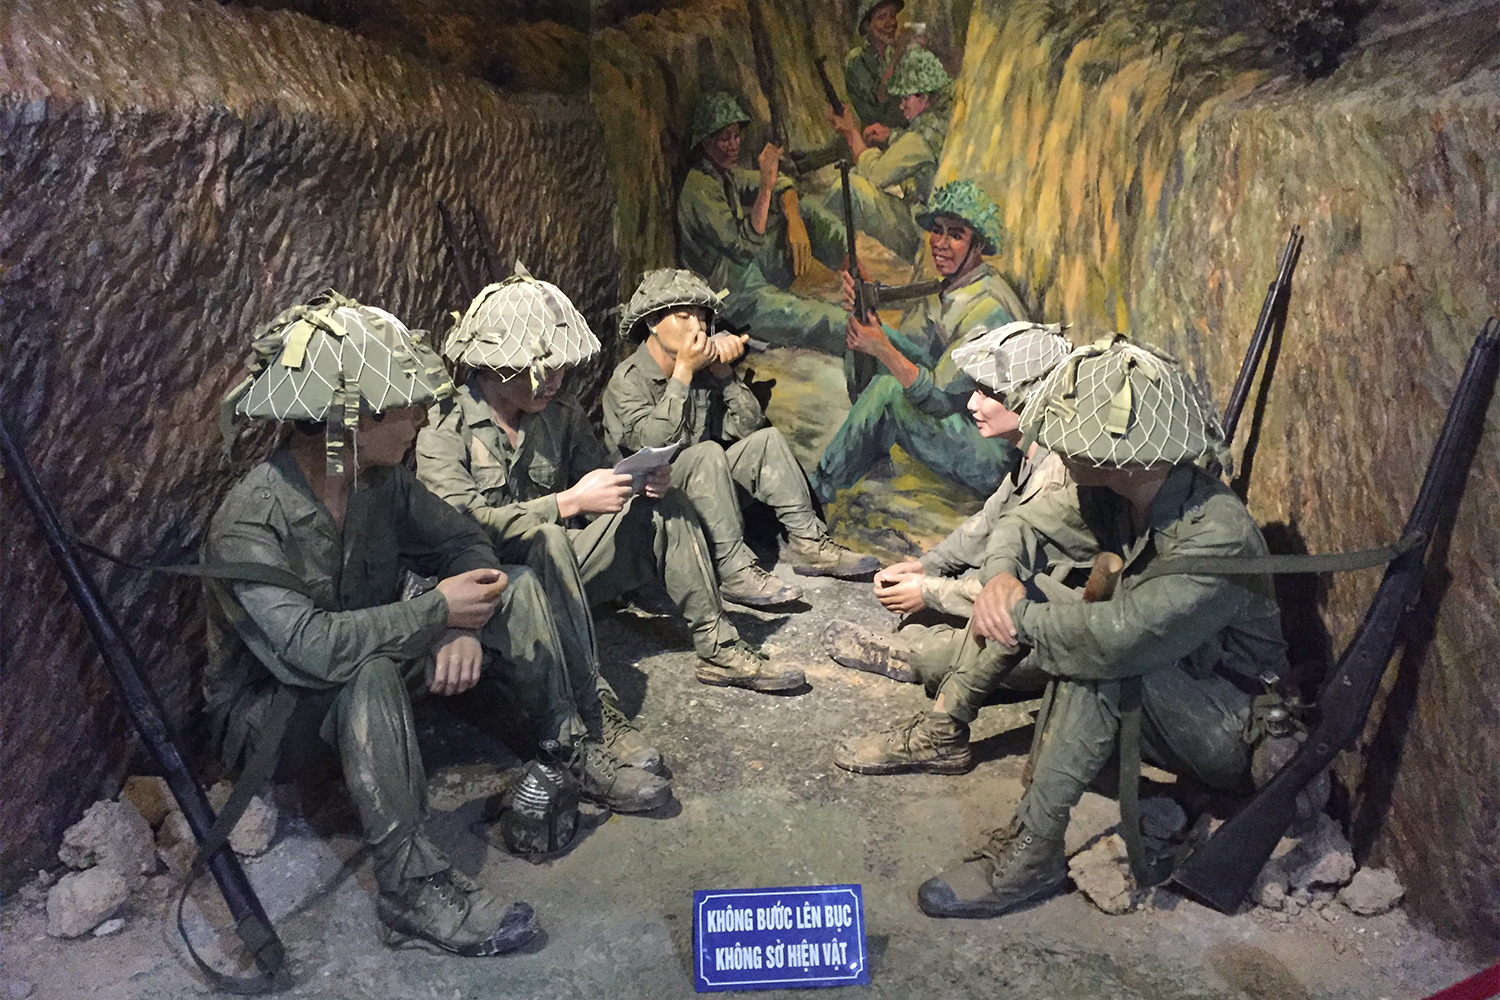 Dans le musée, de nombreuses reconstitutions avec des mannequins permettent aux visiteurs de s’imaginer la vie des soldats pendant la guerre.